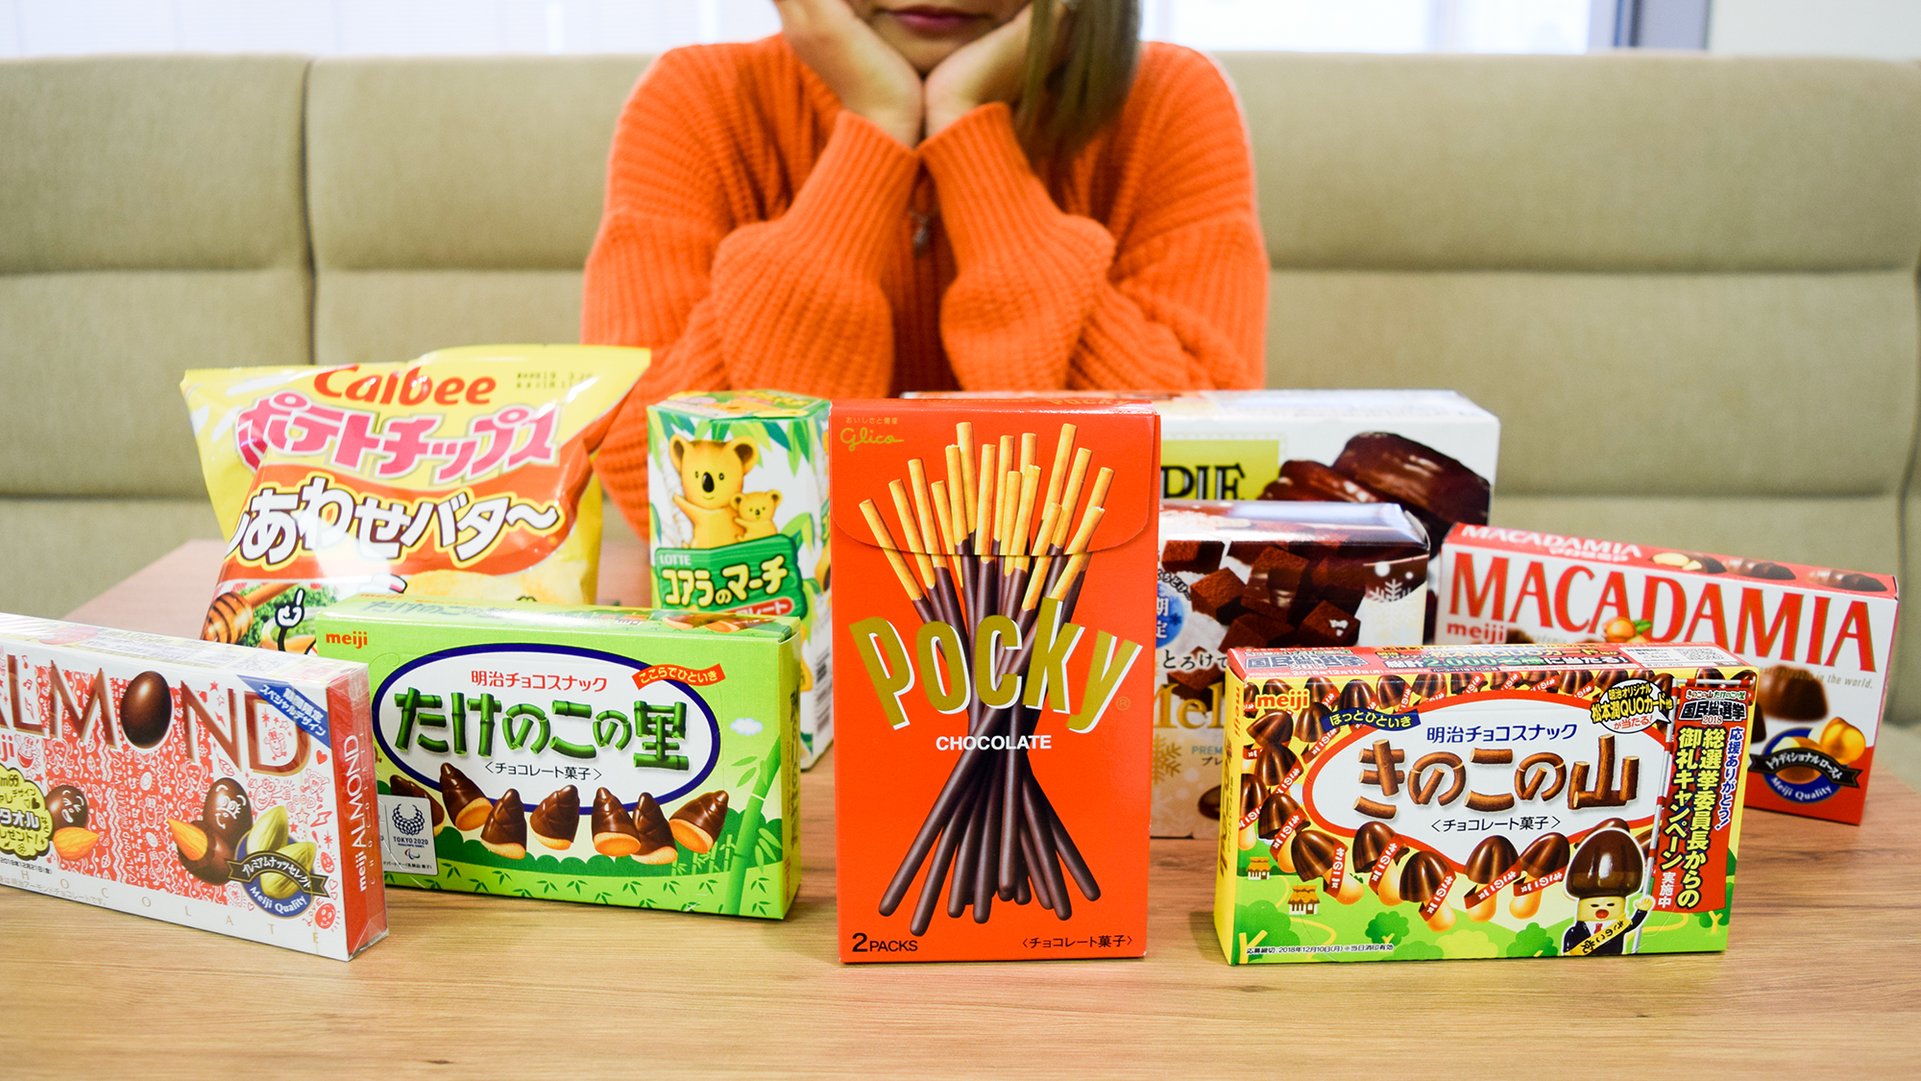 即リピ買い 中国人がハマった日本の お菓子 ランキング Trip Editor